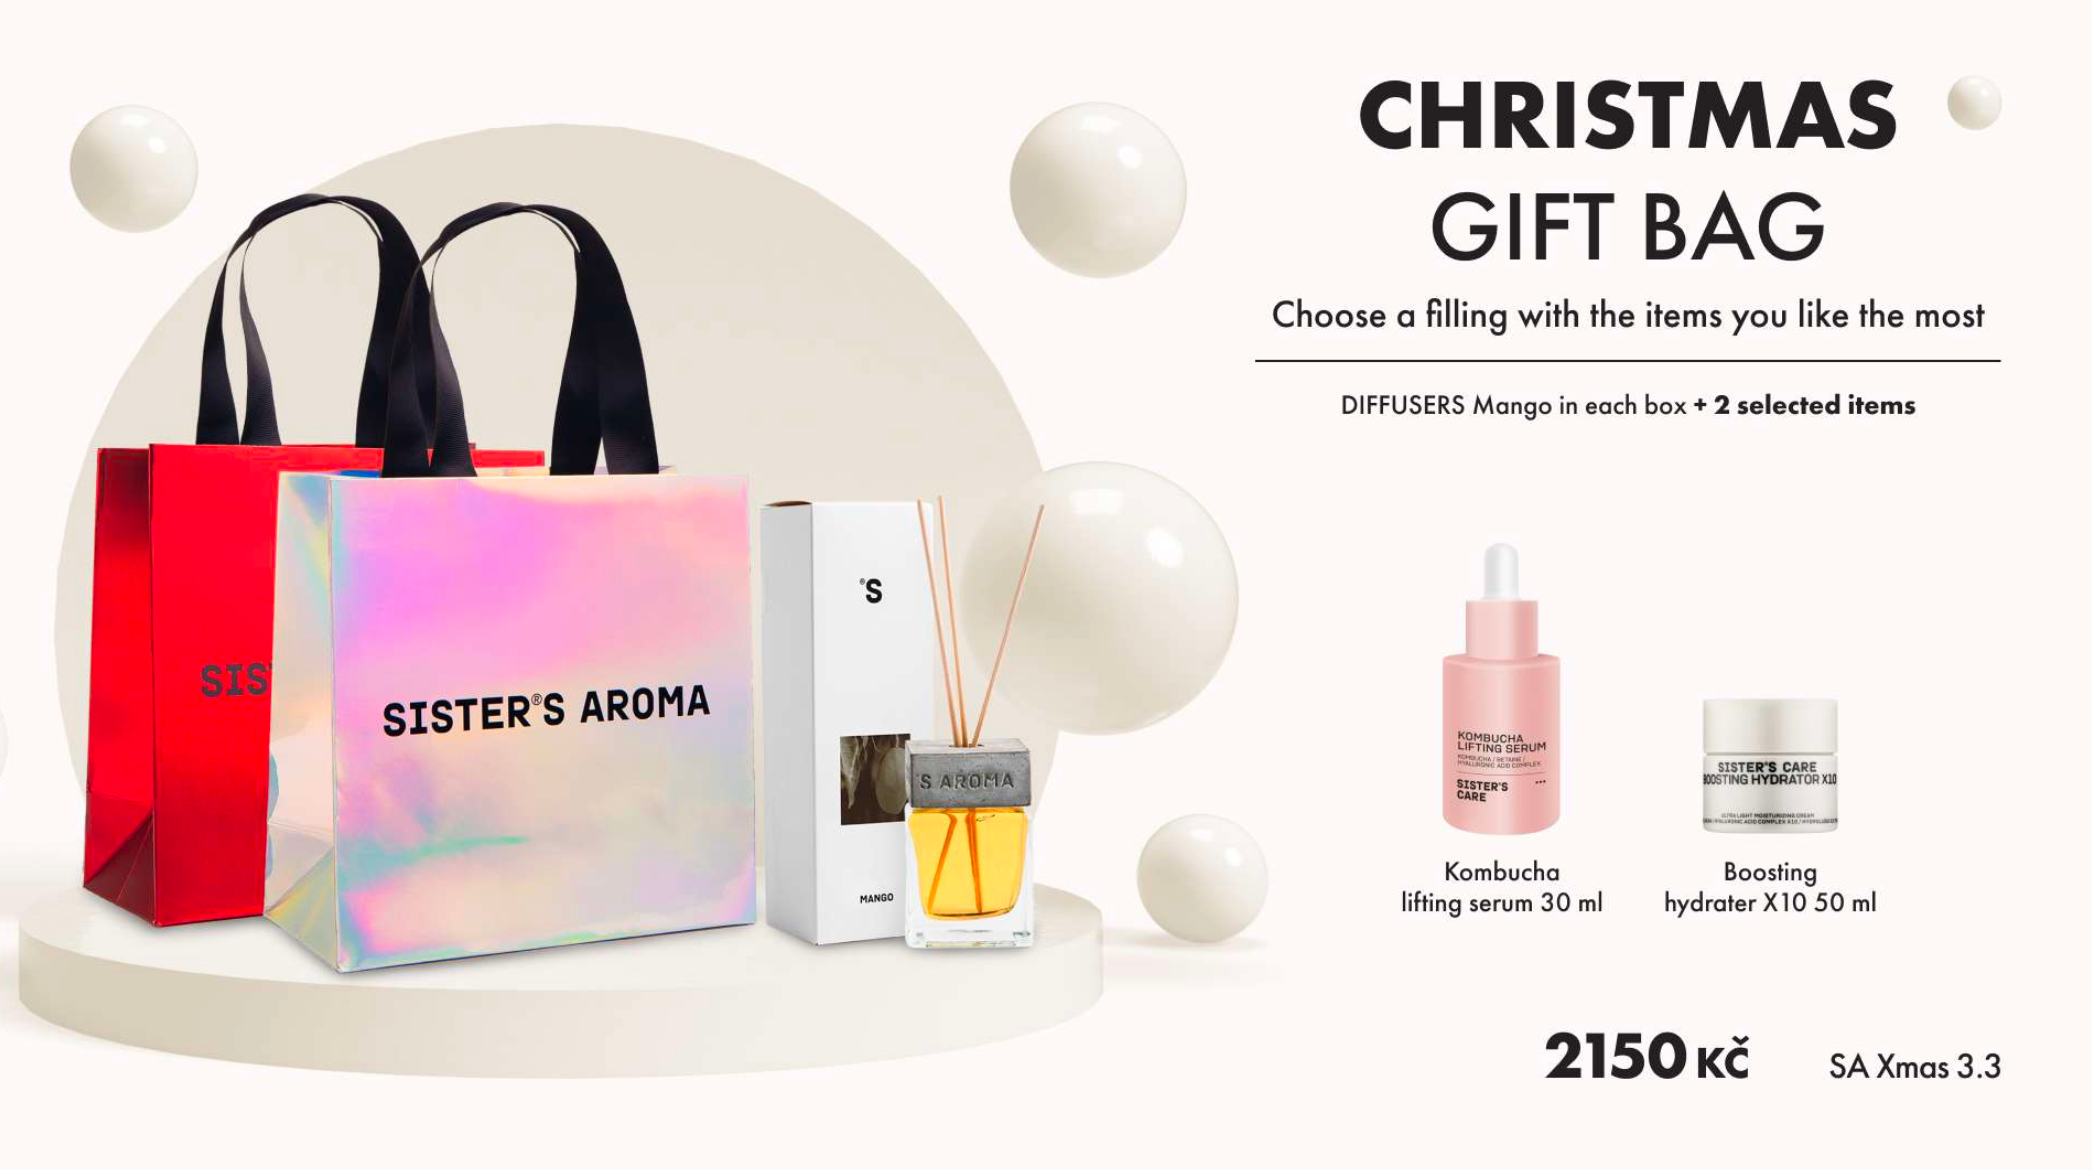 Sisters Aroma - XMAS Christmas Gift Bag 3.3